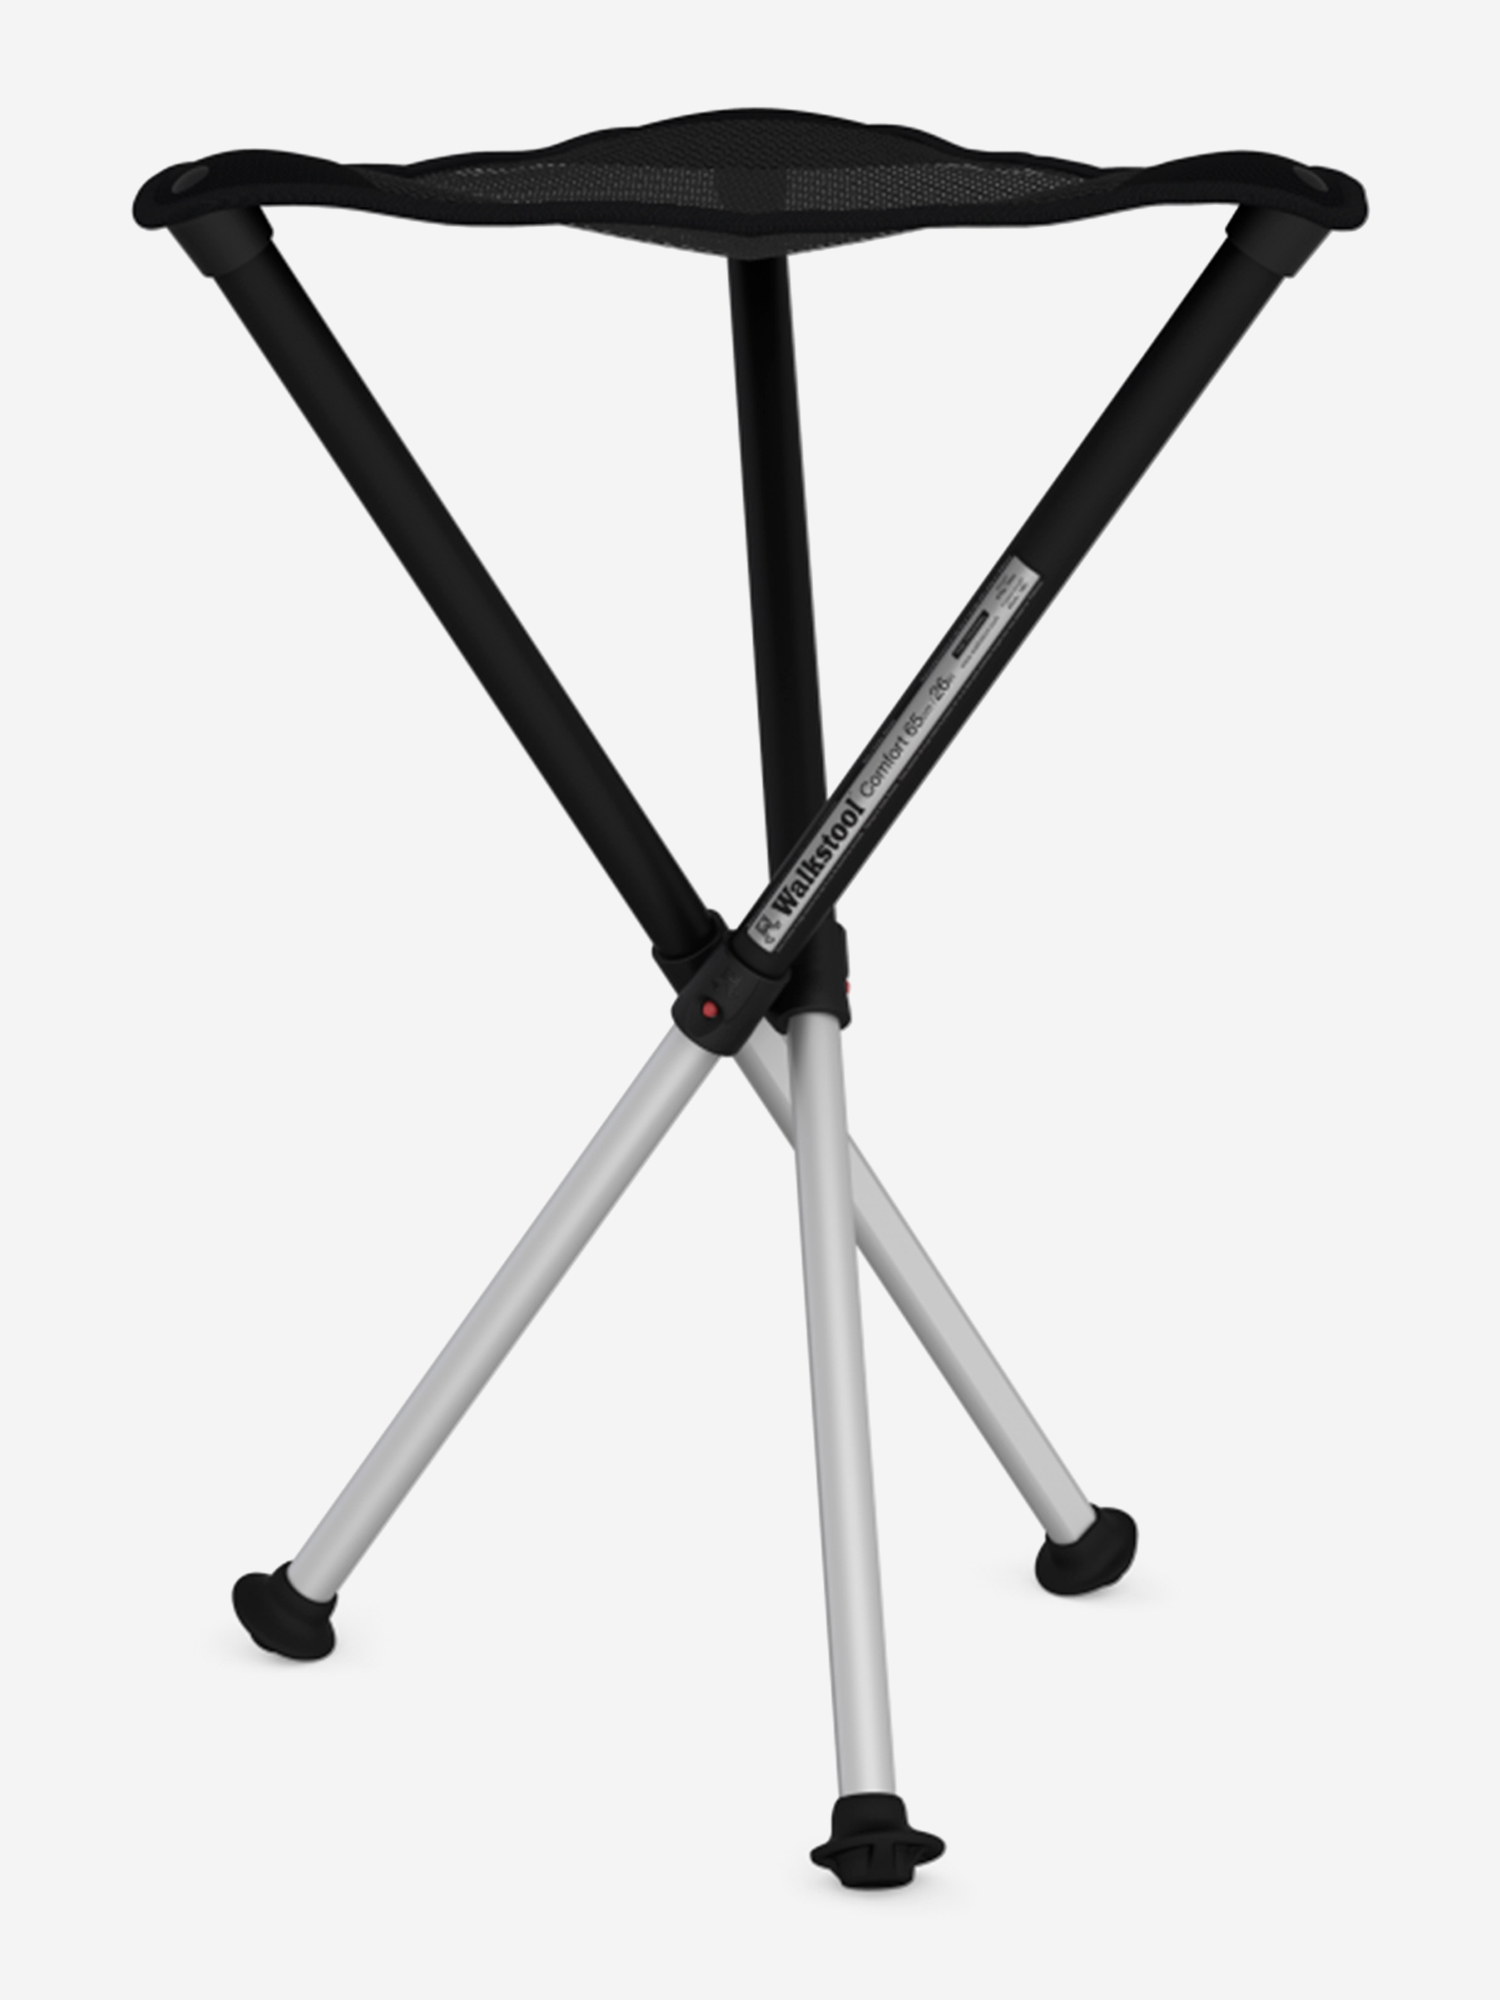 Табурет-тренога Walkstool Comfort 65, высота 65см, макс загрузка 250кг, р-р сидения 40см, 975г, Черный